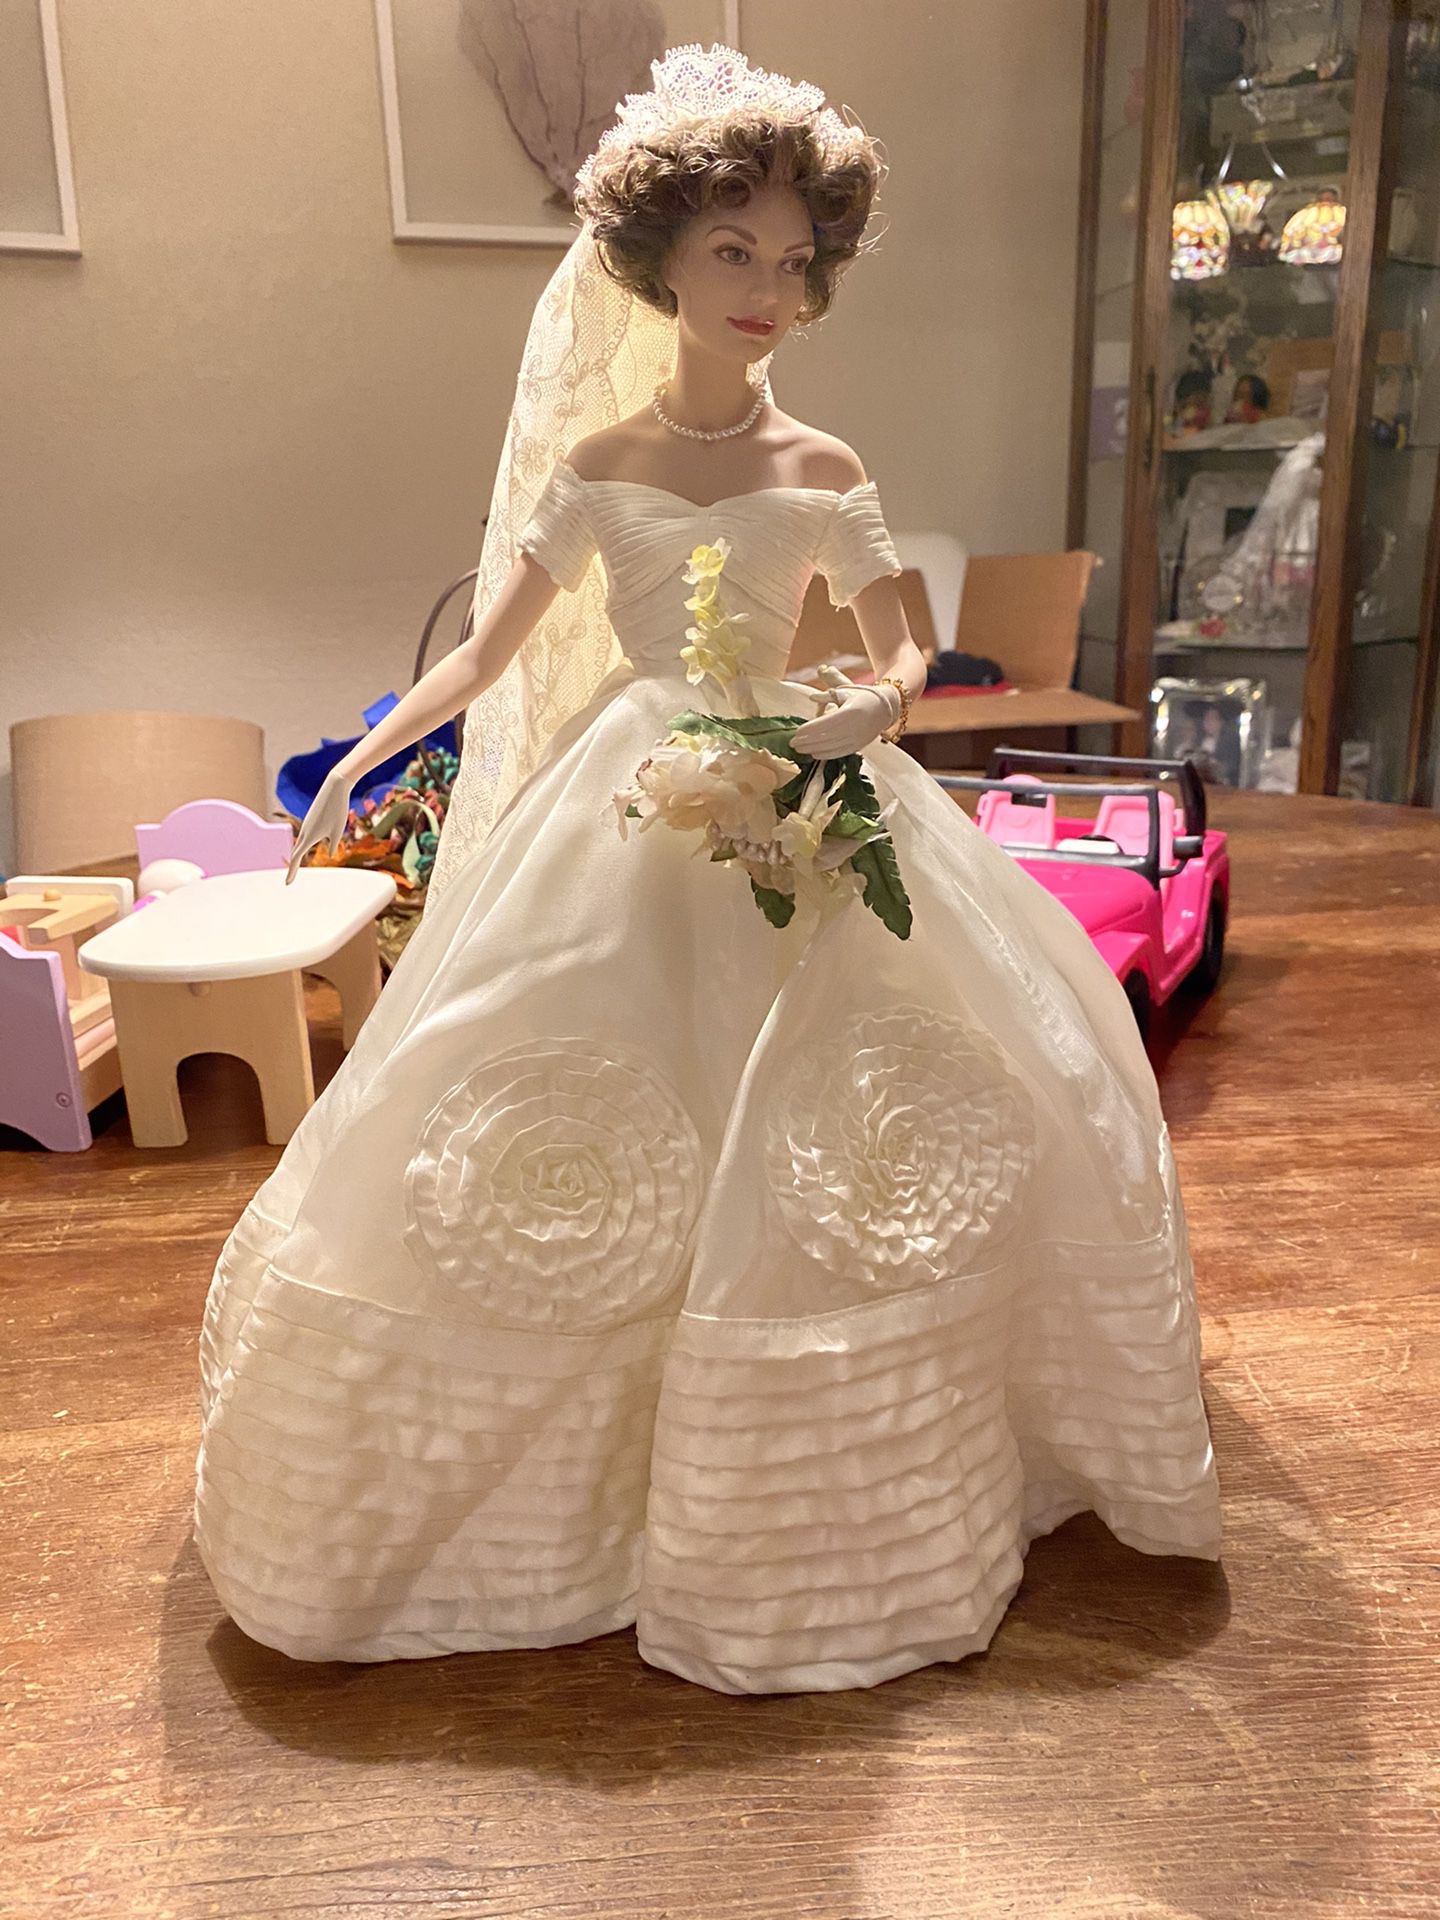 Jackie Kennedy doll with replica wedding dress